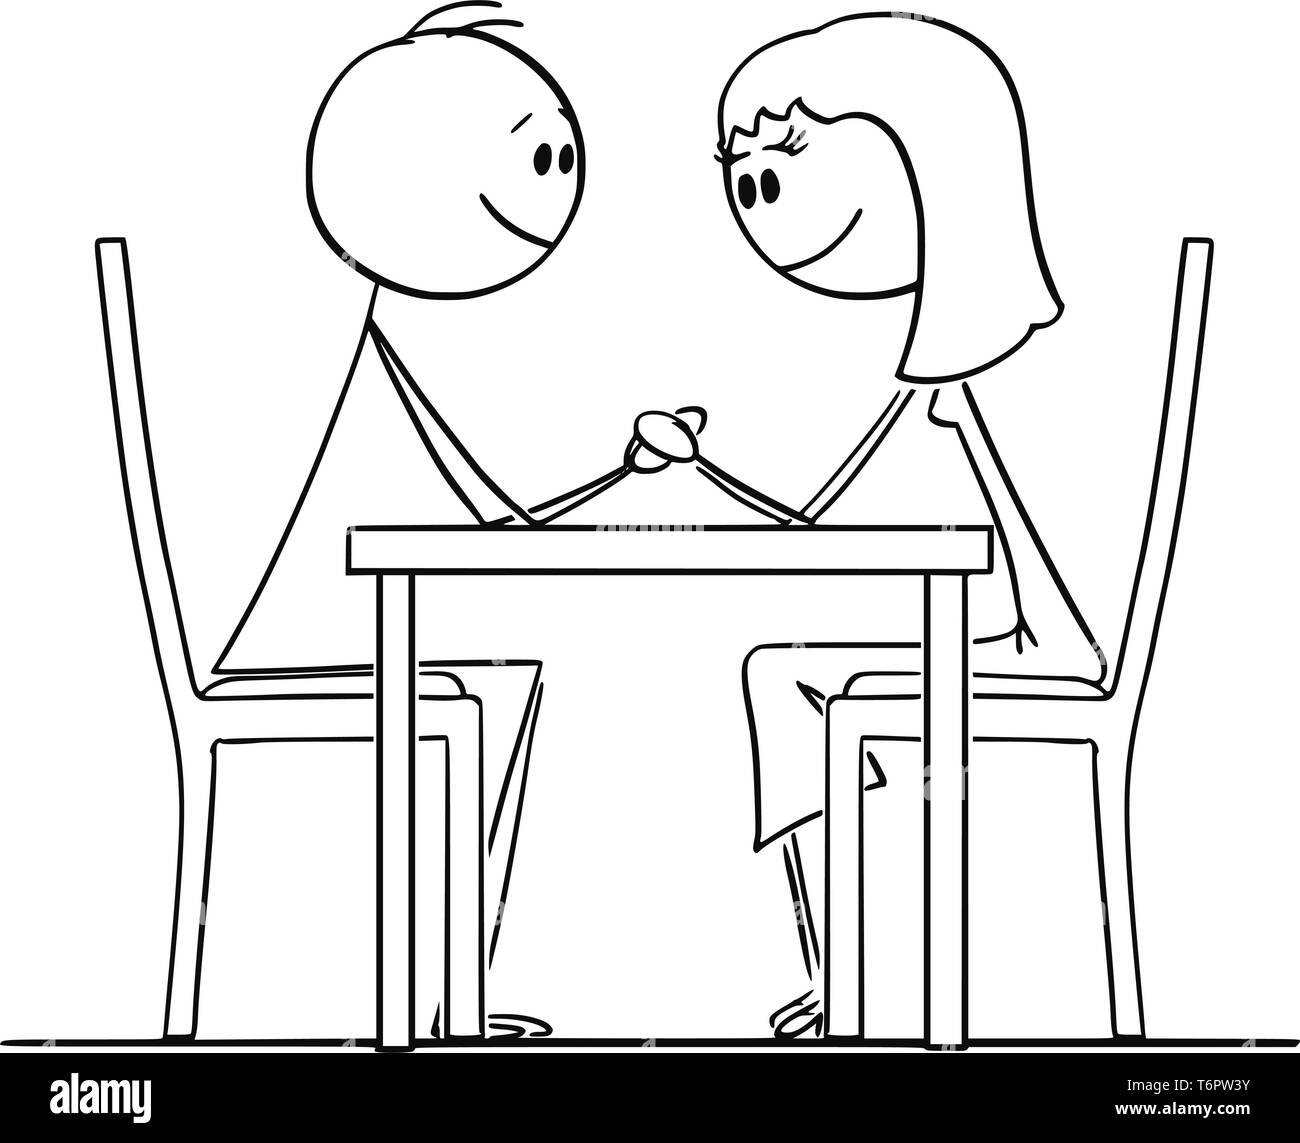 Cartoon Strichmännchen Zeichnen konzeptionelle Darstellung der liebenden Paar von Mann und Frau, hinter einem Tisch im Restaurant, halten sich an den Händen und Augen. Stock Vektor